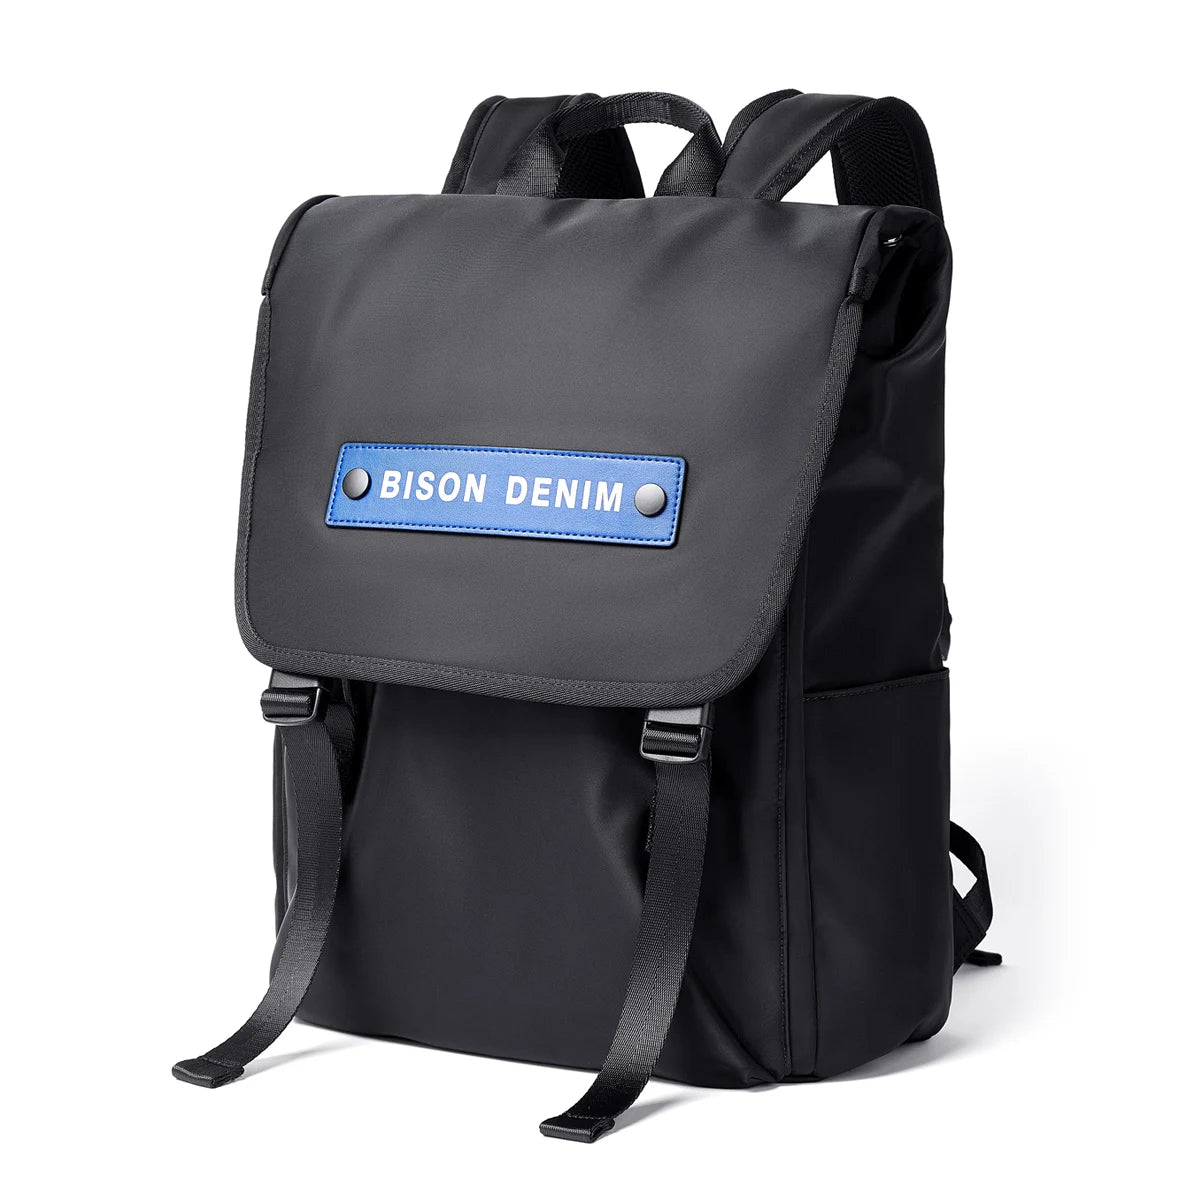 BISON DENIM Multifunction Waterproof Backpack Men Women Luxury Student School Bags Casual Notebook Backpacks 15.6 Inch Laptop Bag N20219 Black